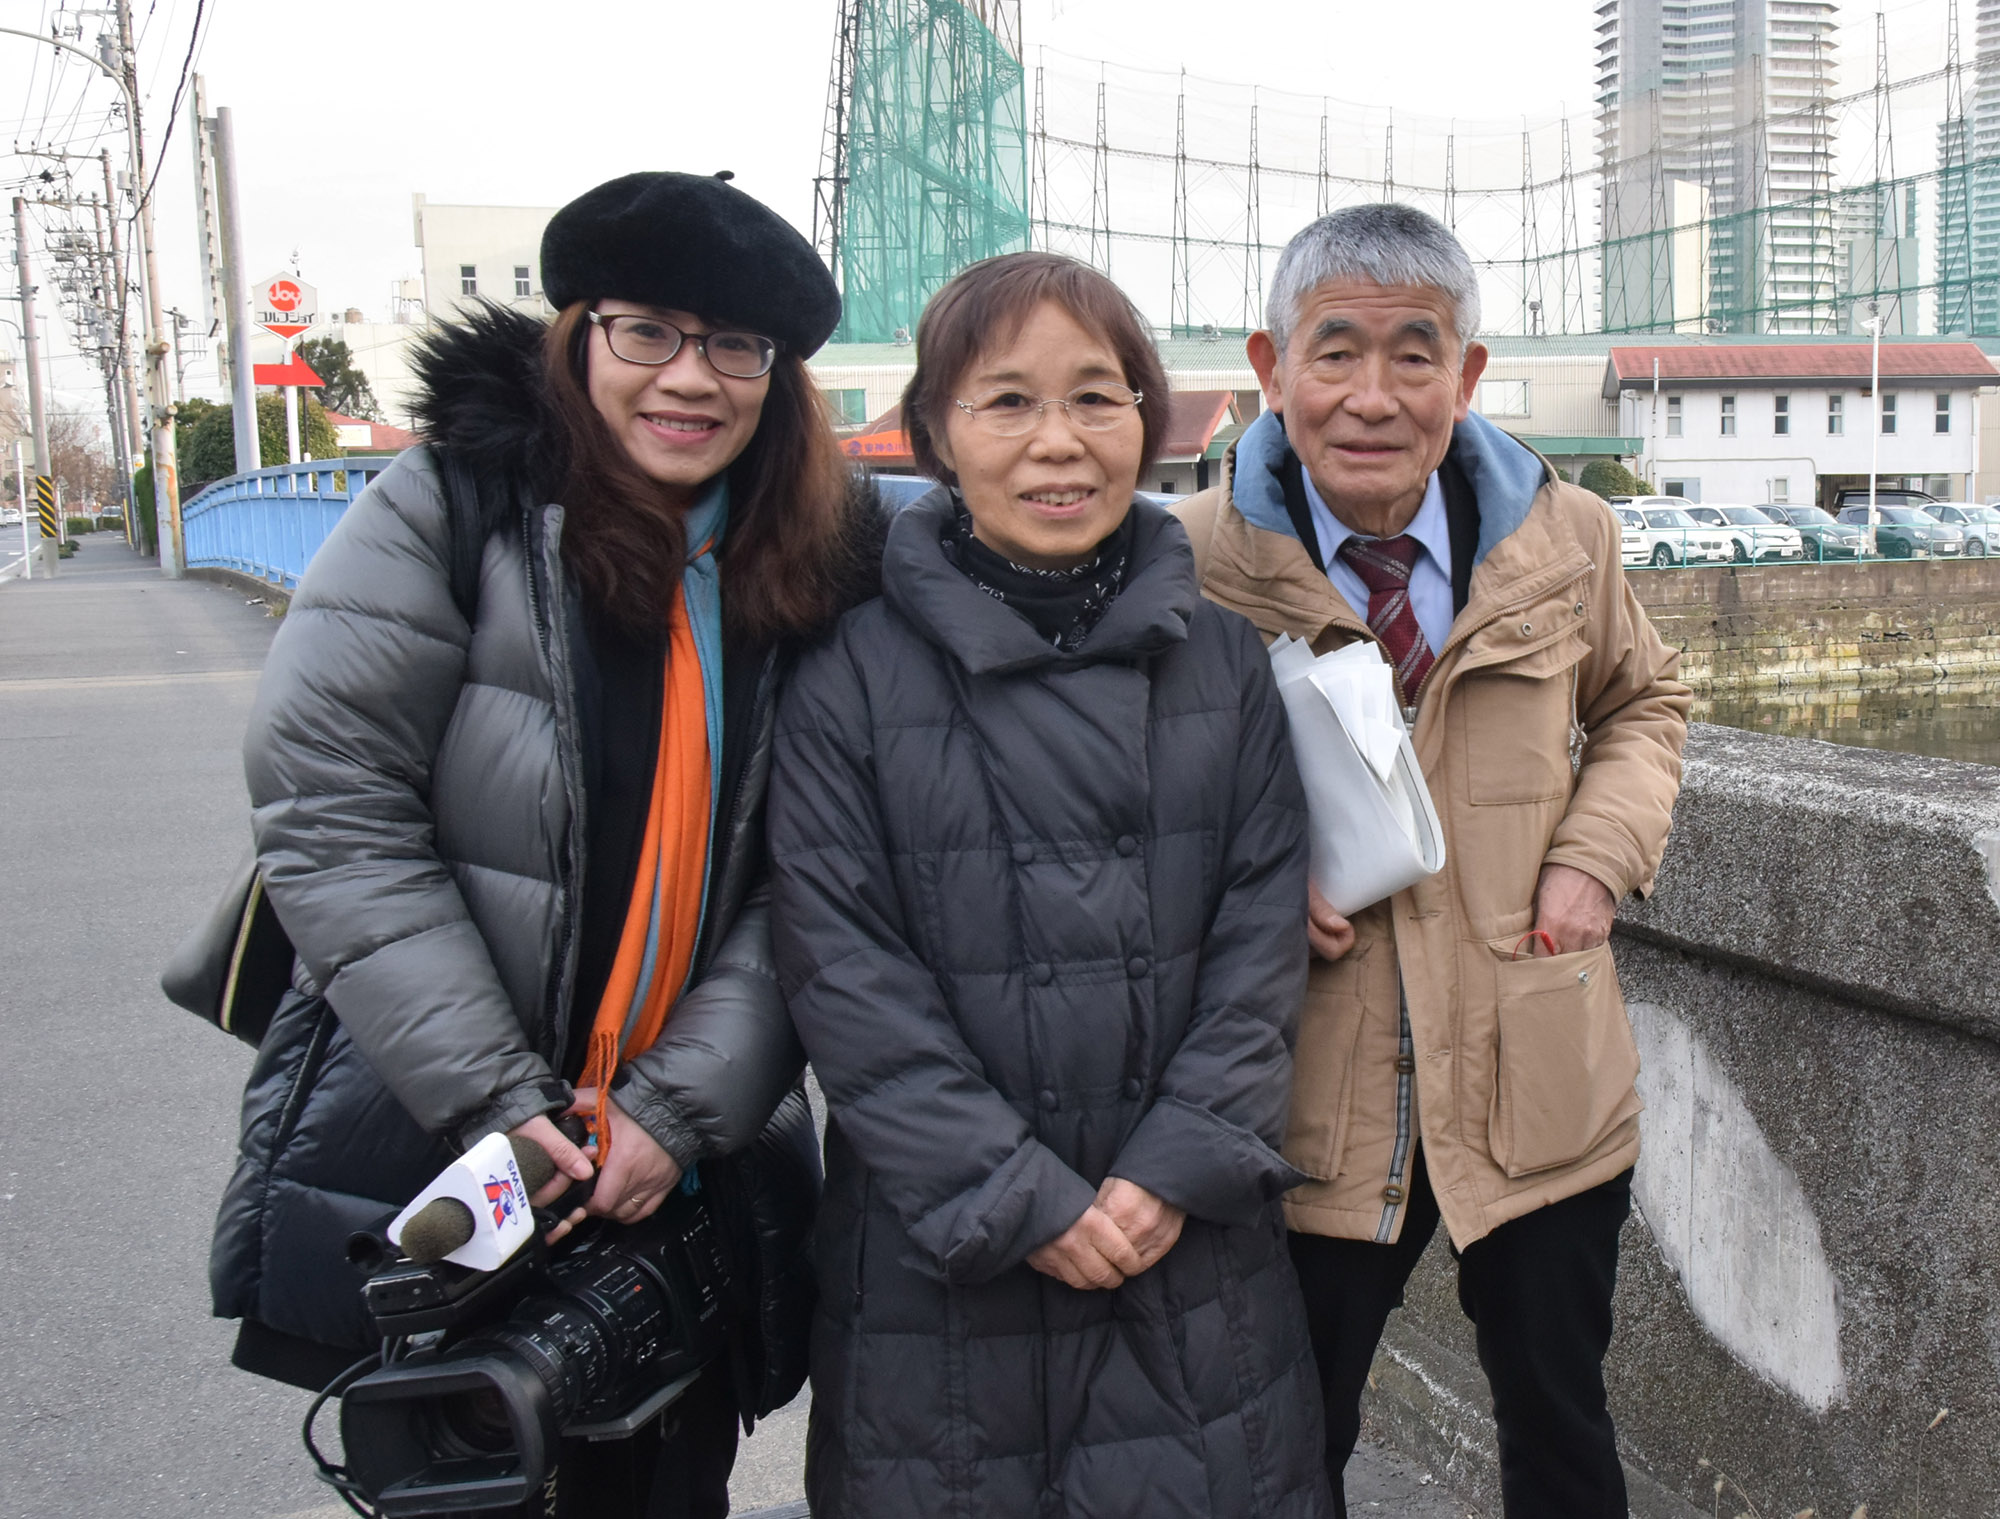 Phóng viên TTXVN chụp ảnh lưu niệm với các thành viên kỳ cựu của Công đoàn lao động Yokohama tại cầu Murasame, nơi đã từng diễn ra cuộc biểu tình phản đối Mỹ tiến hành chiến tranh tại Việt Nam”